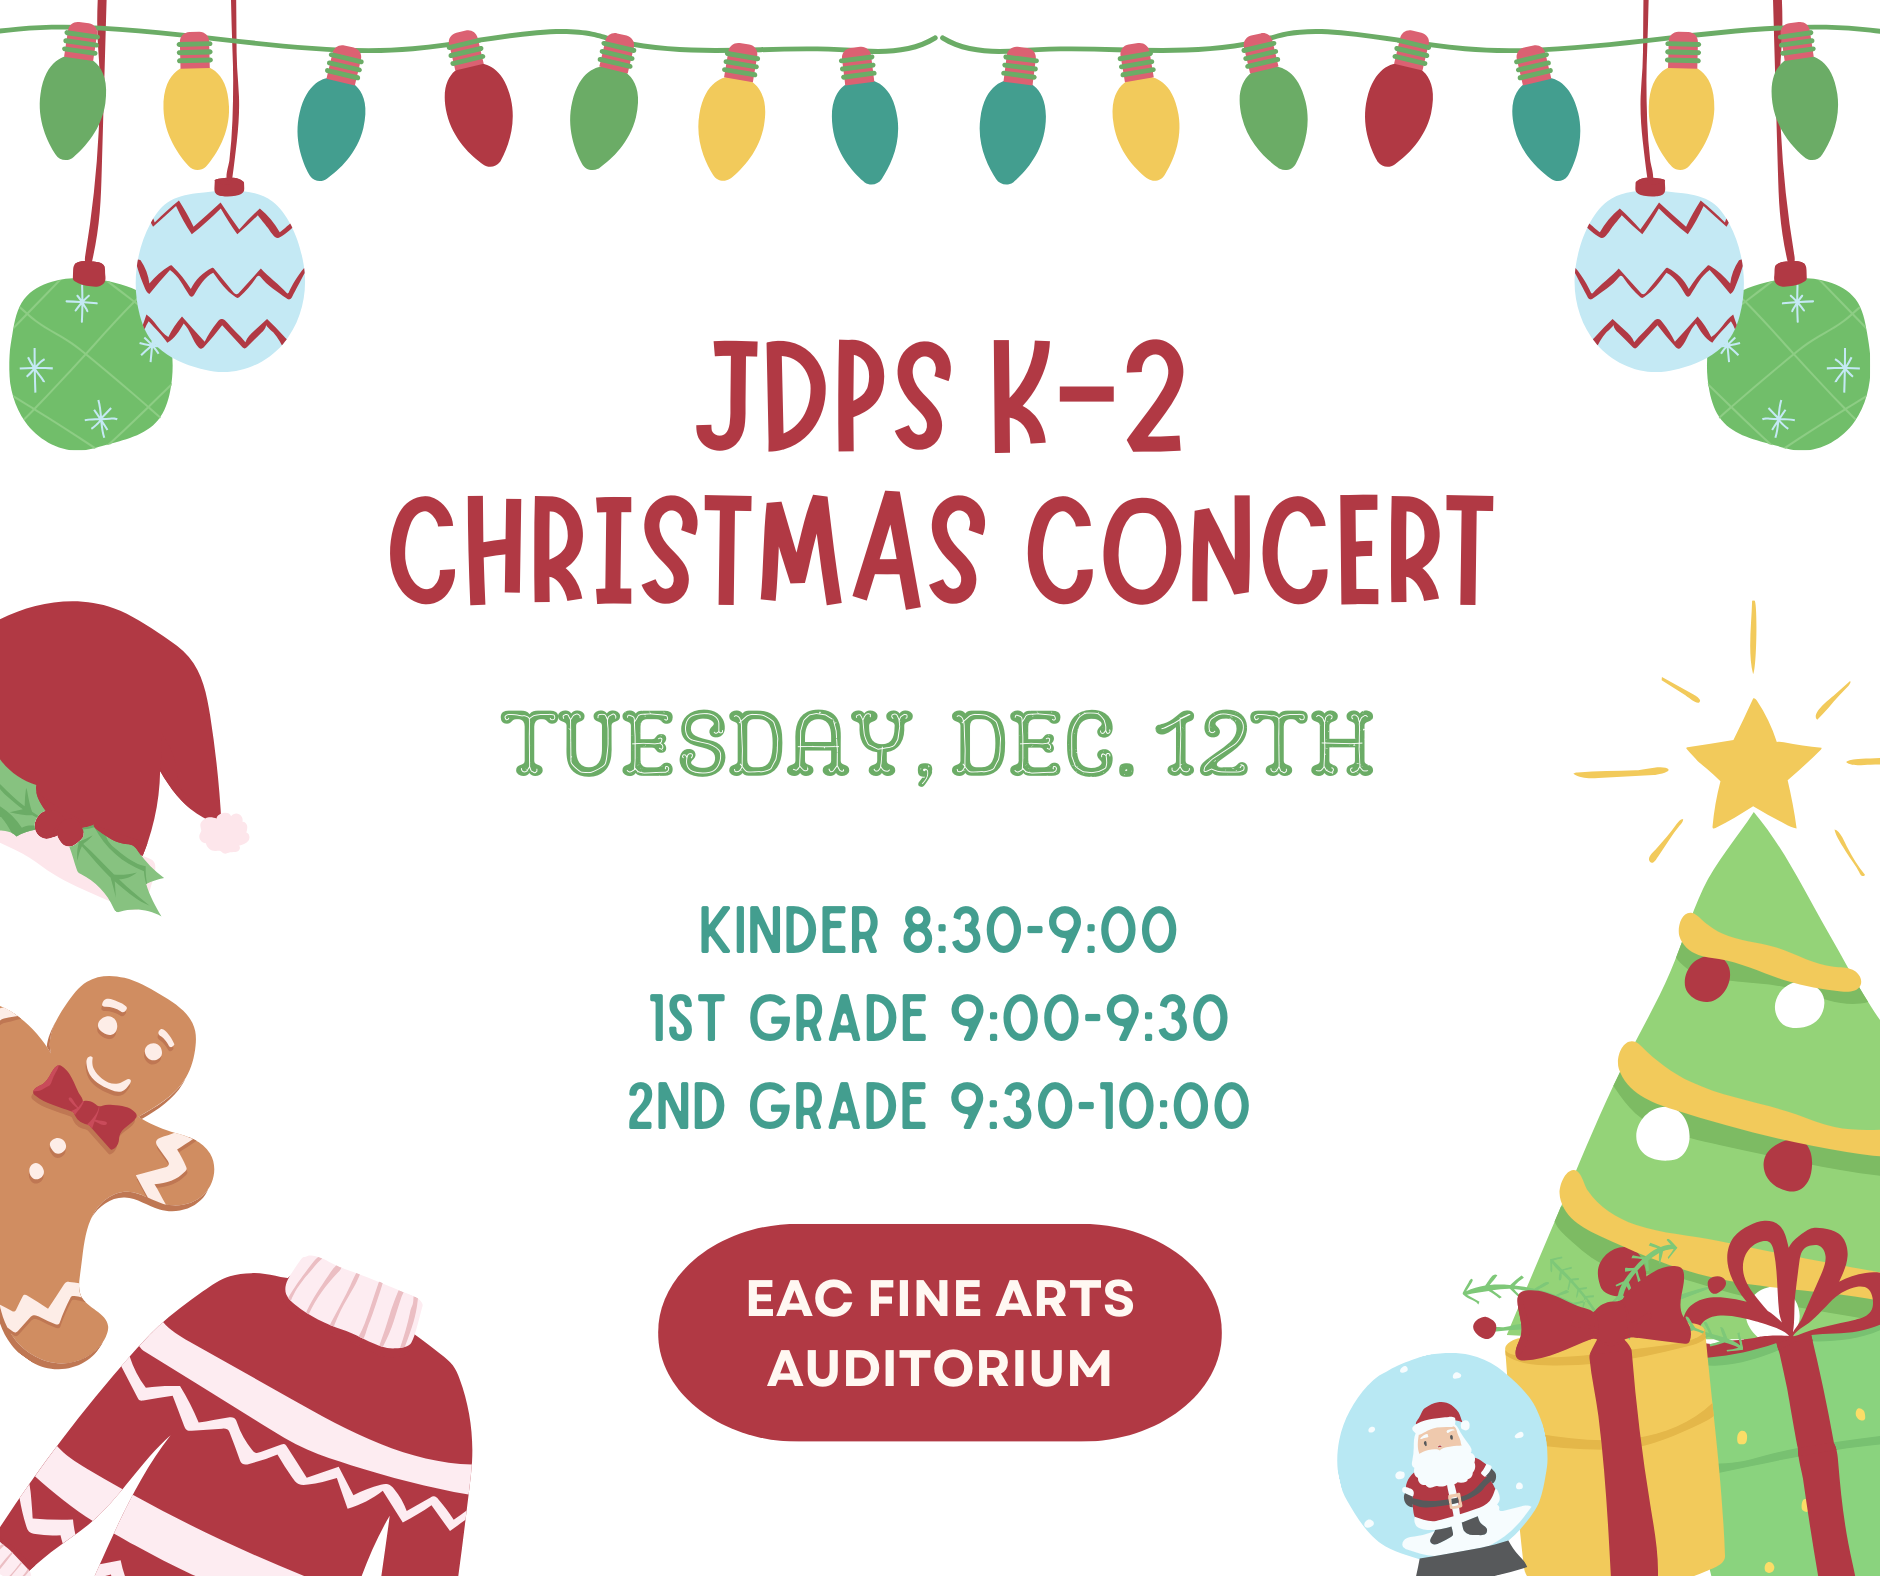 JDPS K-2 Christmas Music program